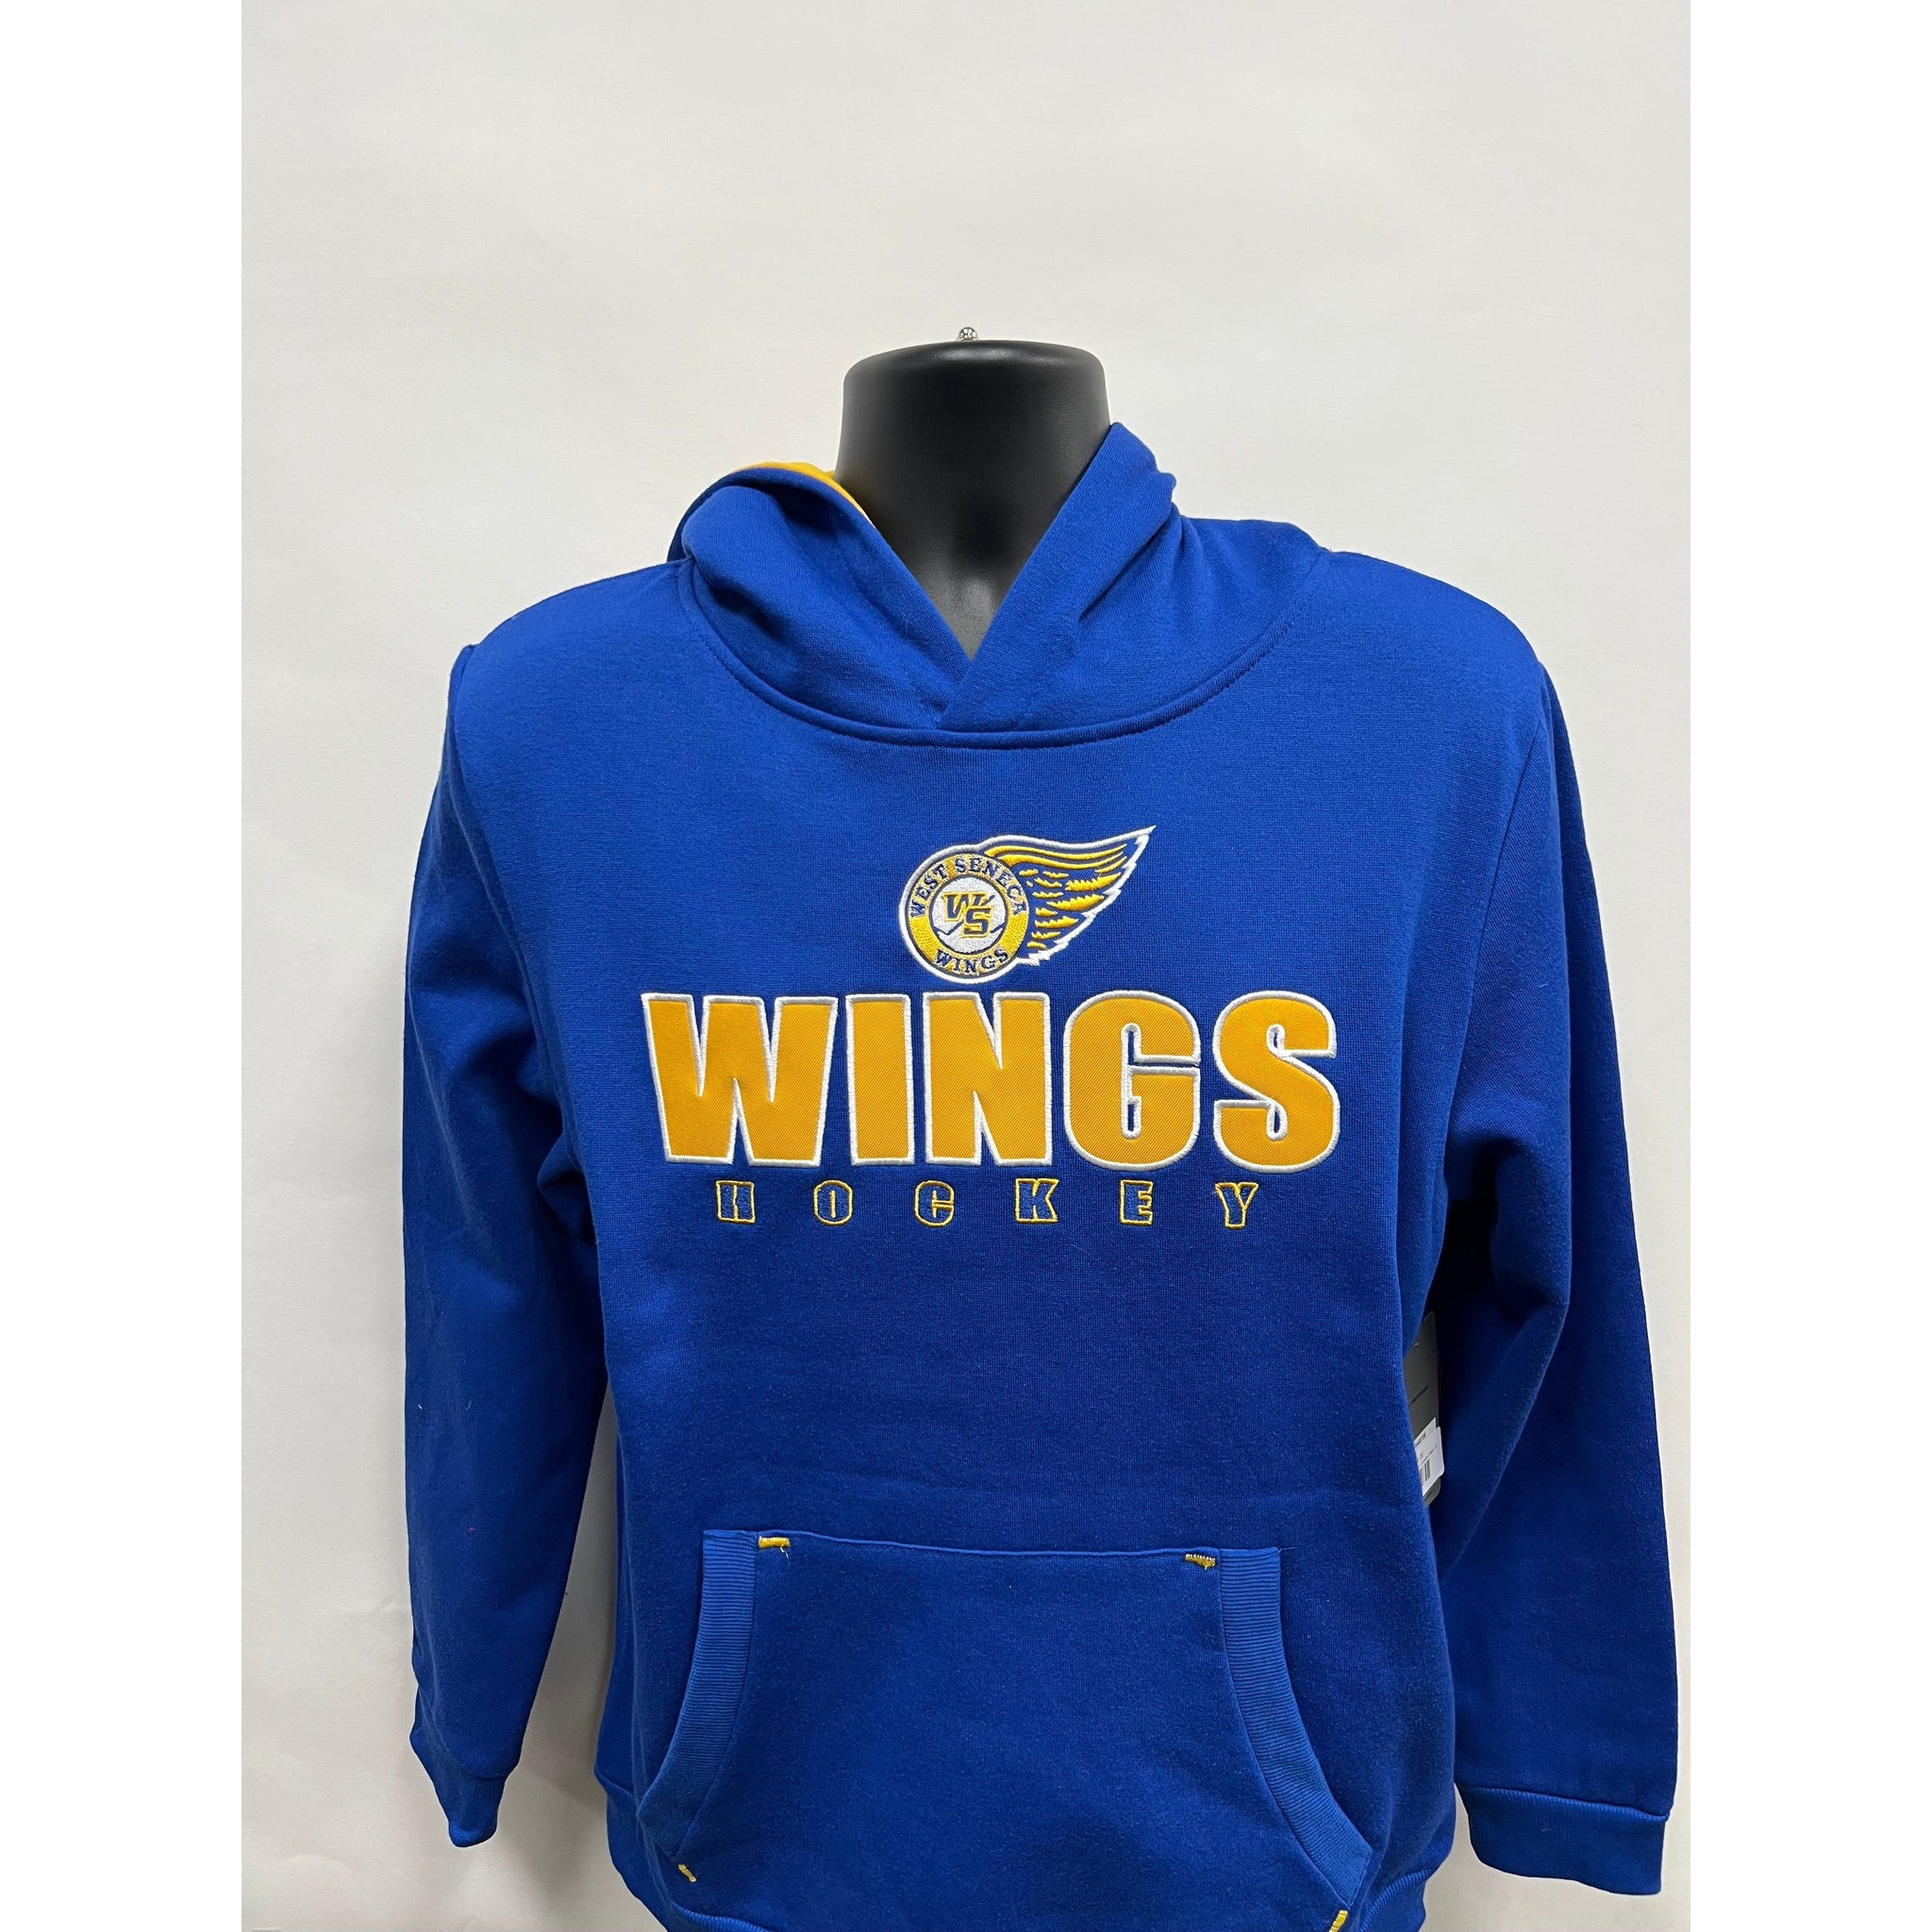 West Seneca Wings